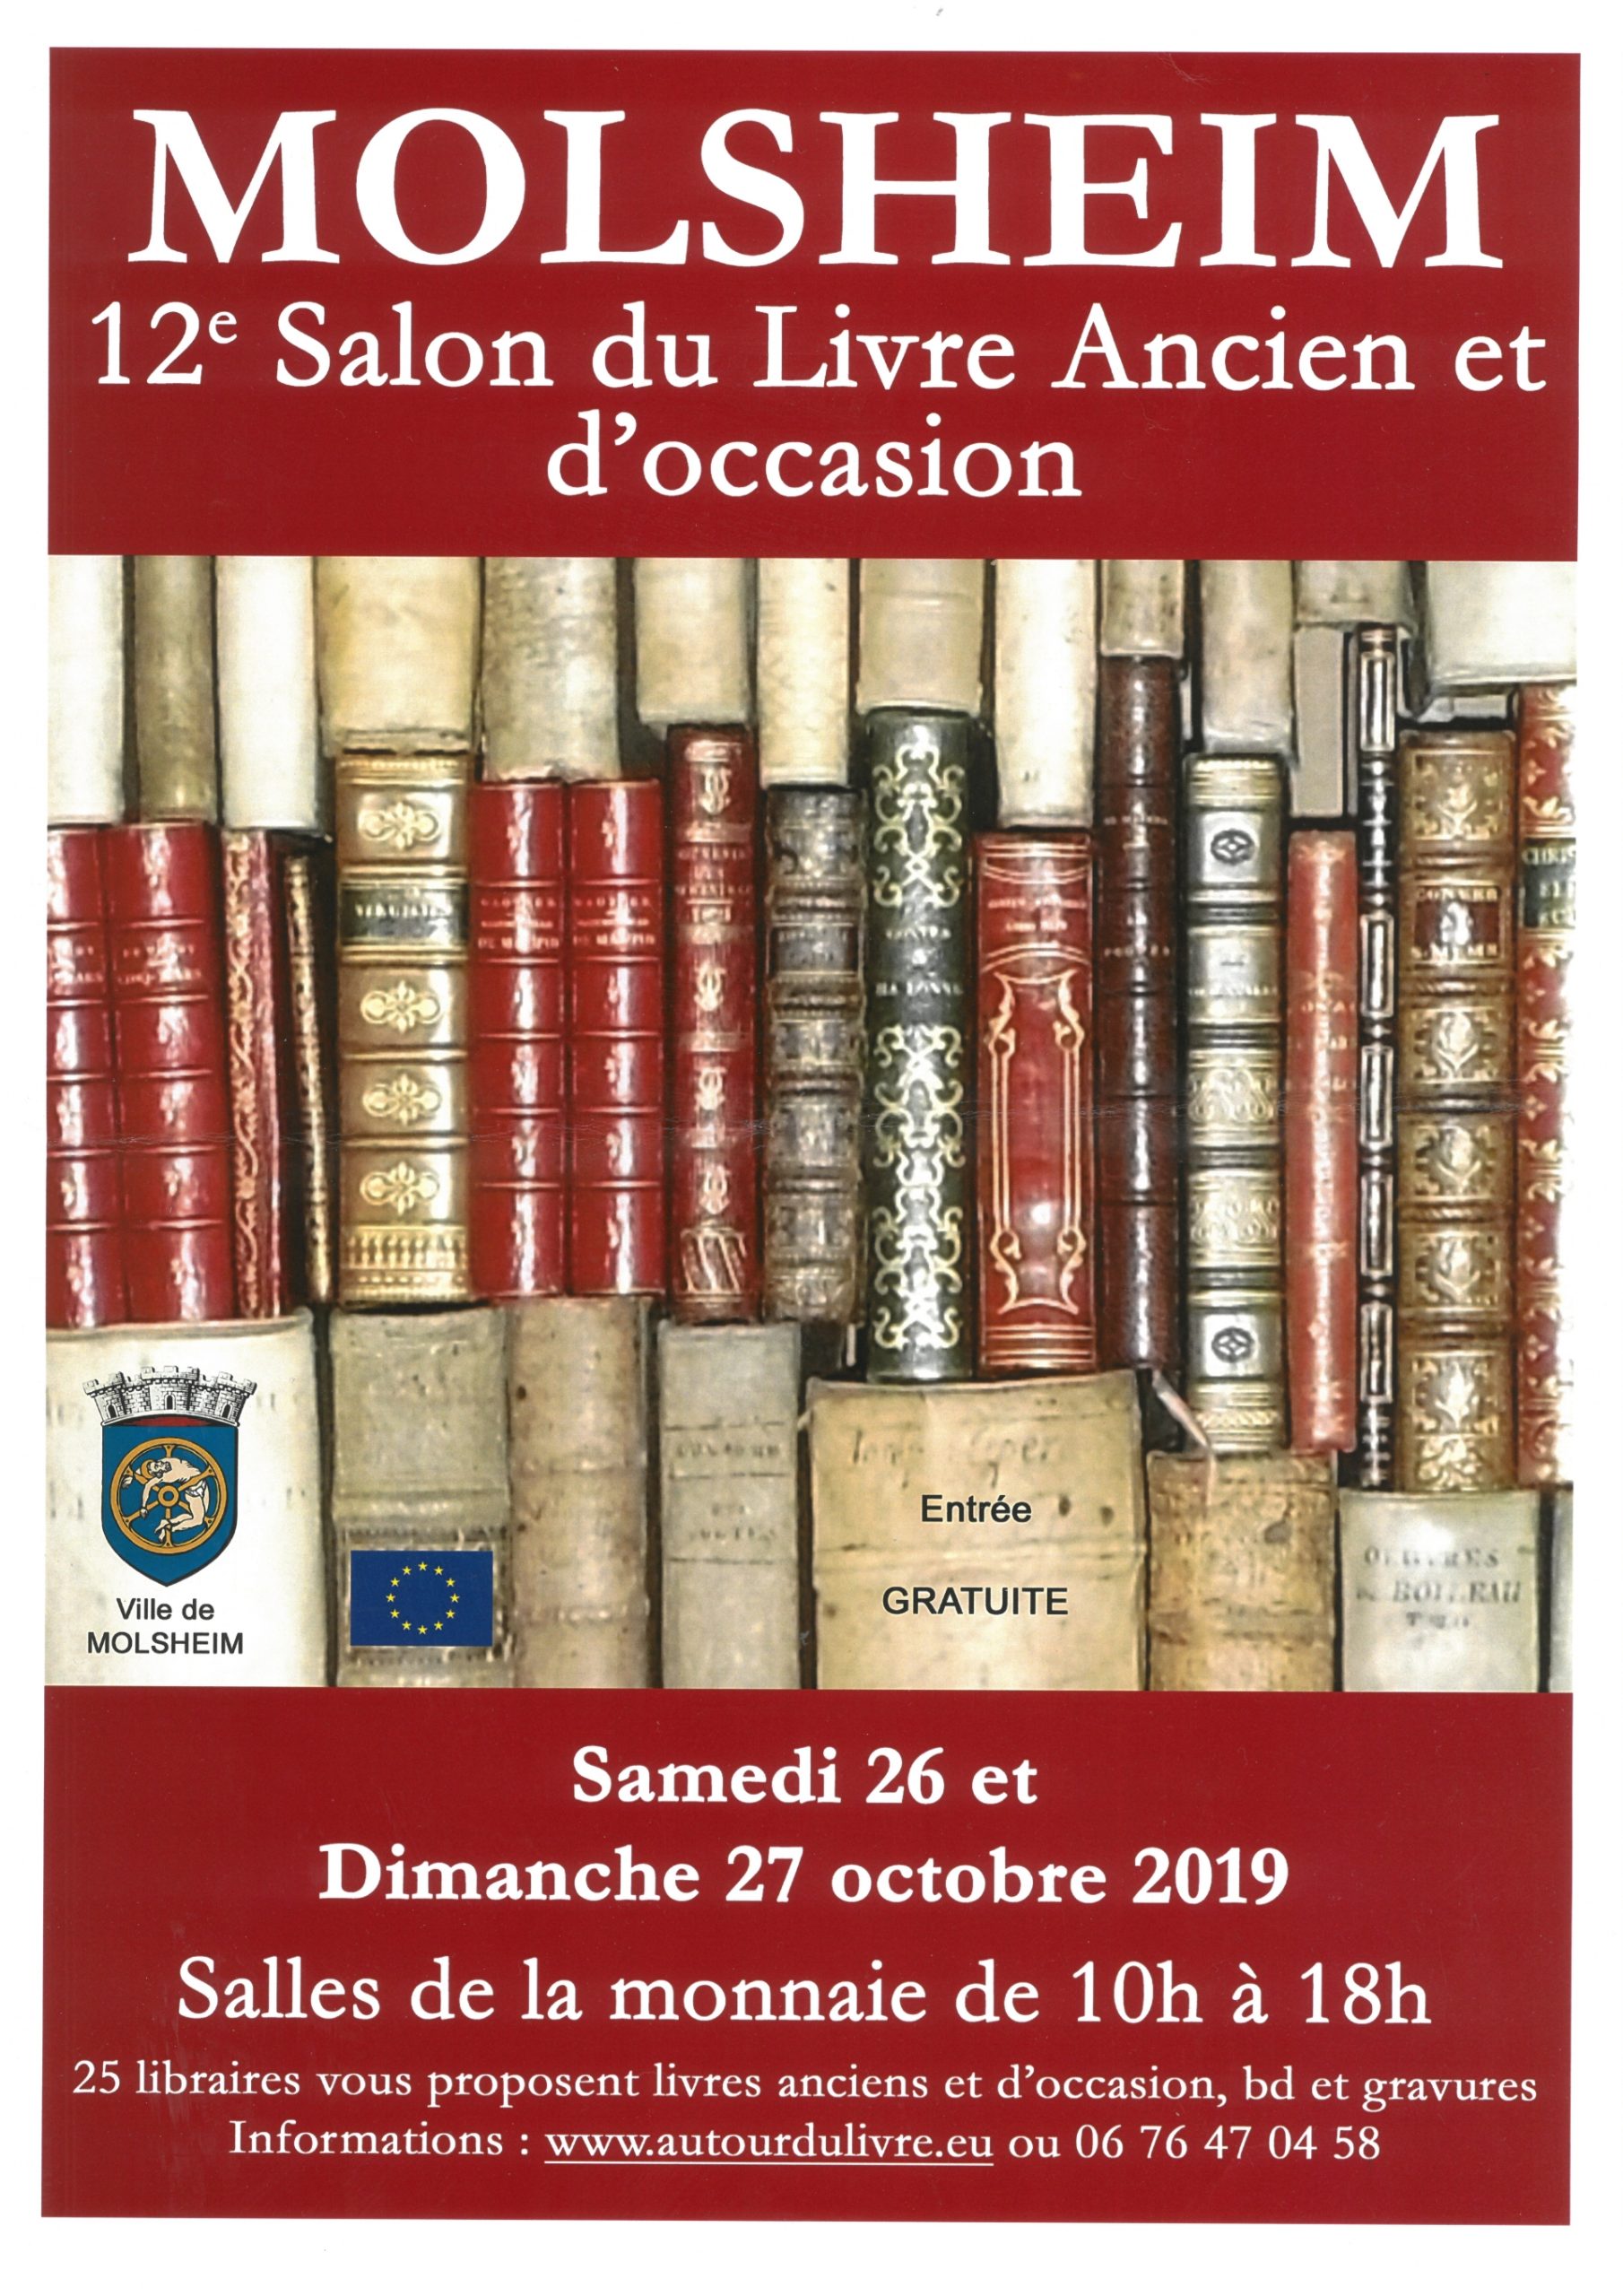 12e Salon du Livre Ancien et d’occasion de Molsheim le 26 et 27 octobre 2019